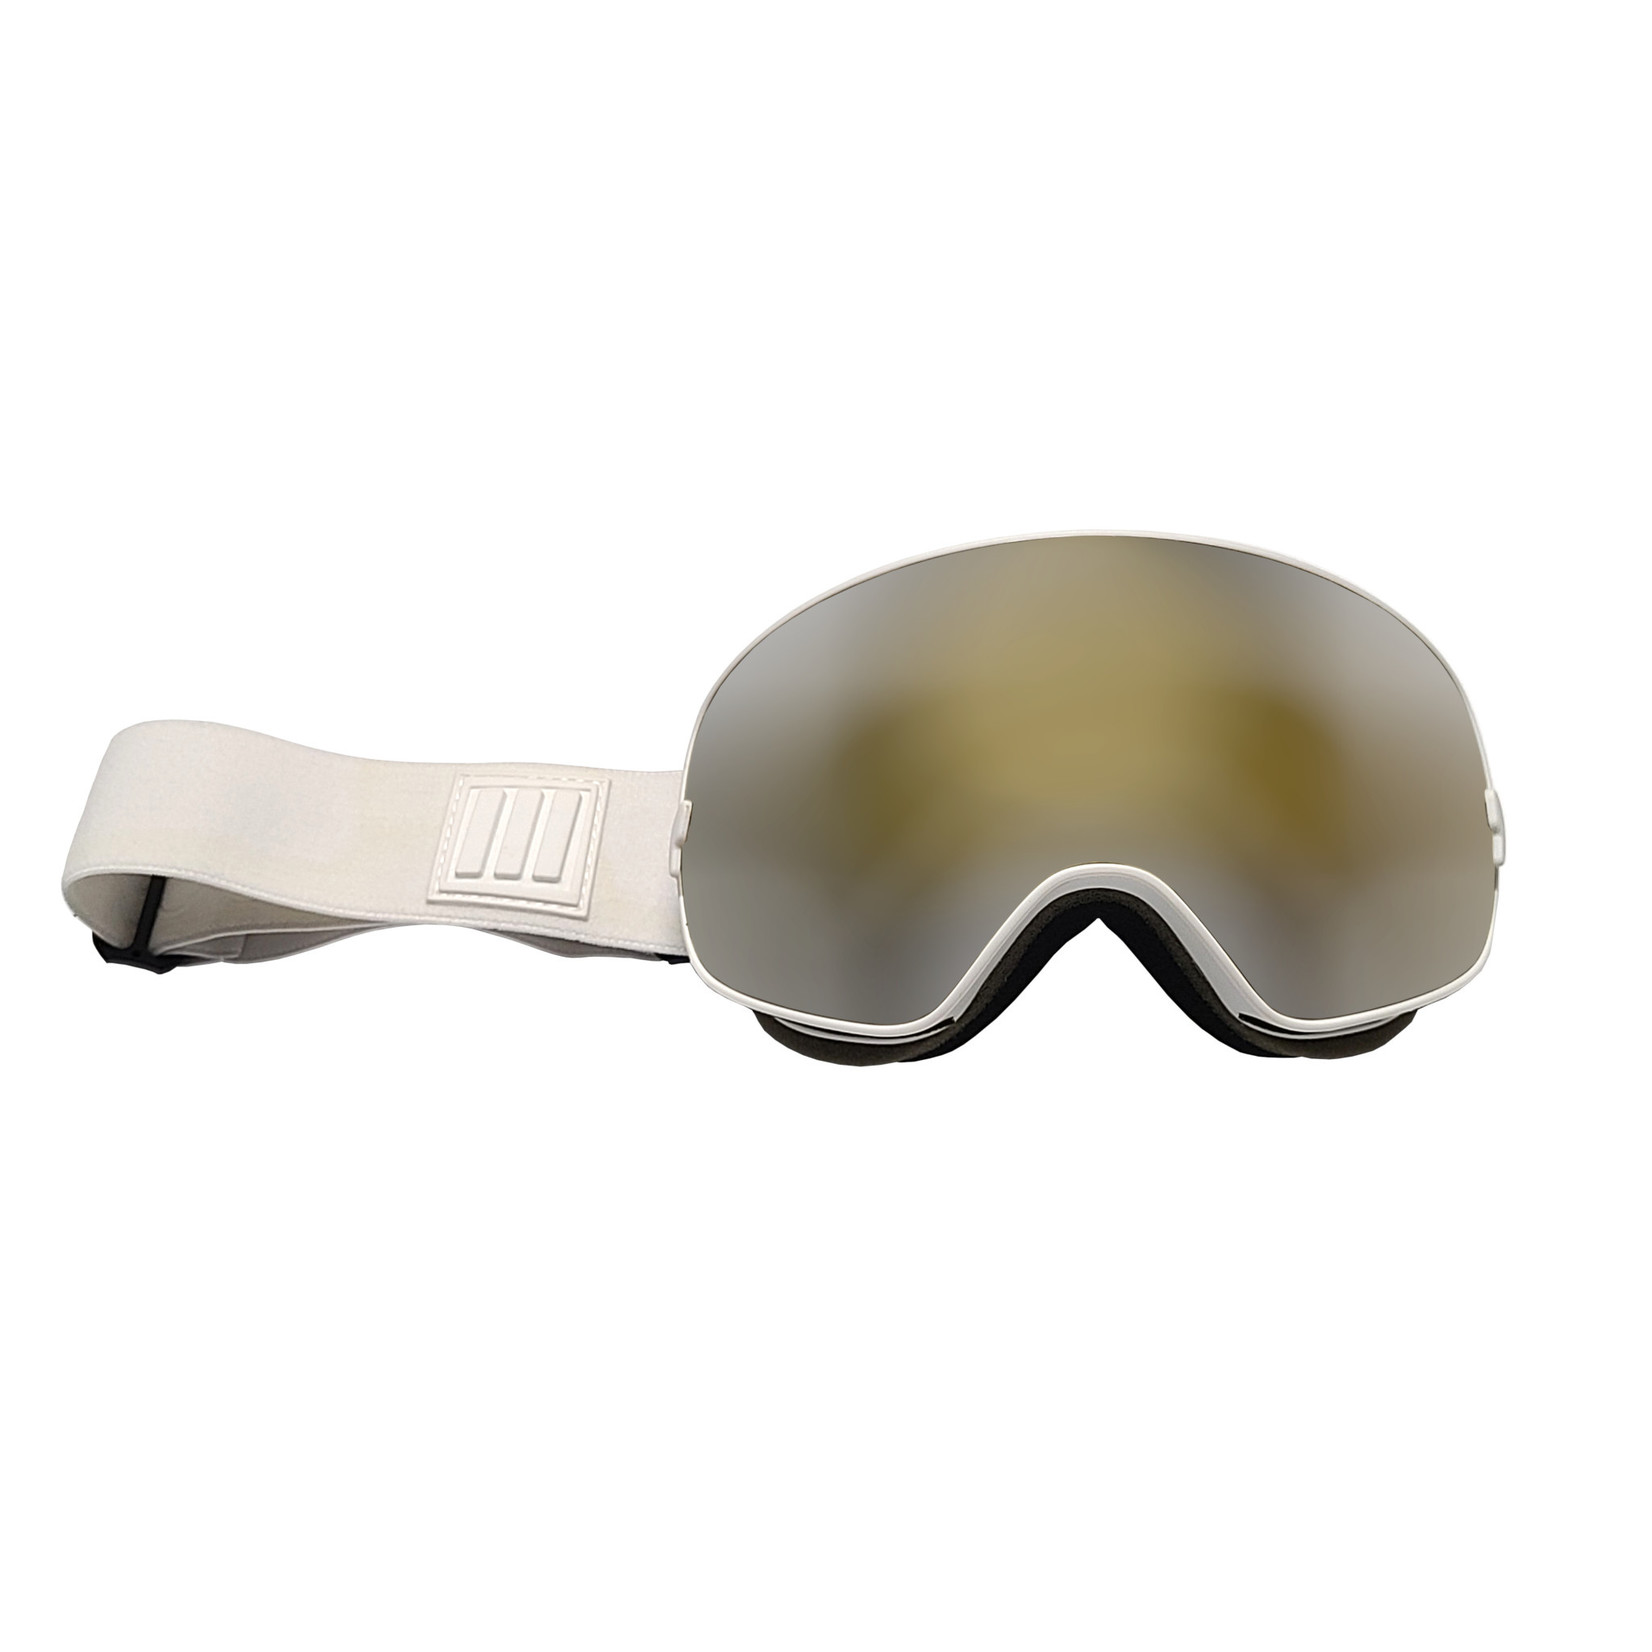 Ellipse Ellipse Vision - Ski Goggles Senior